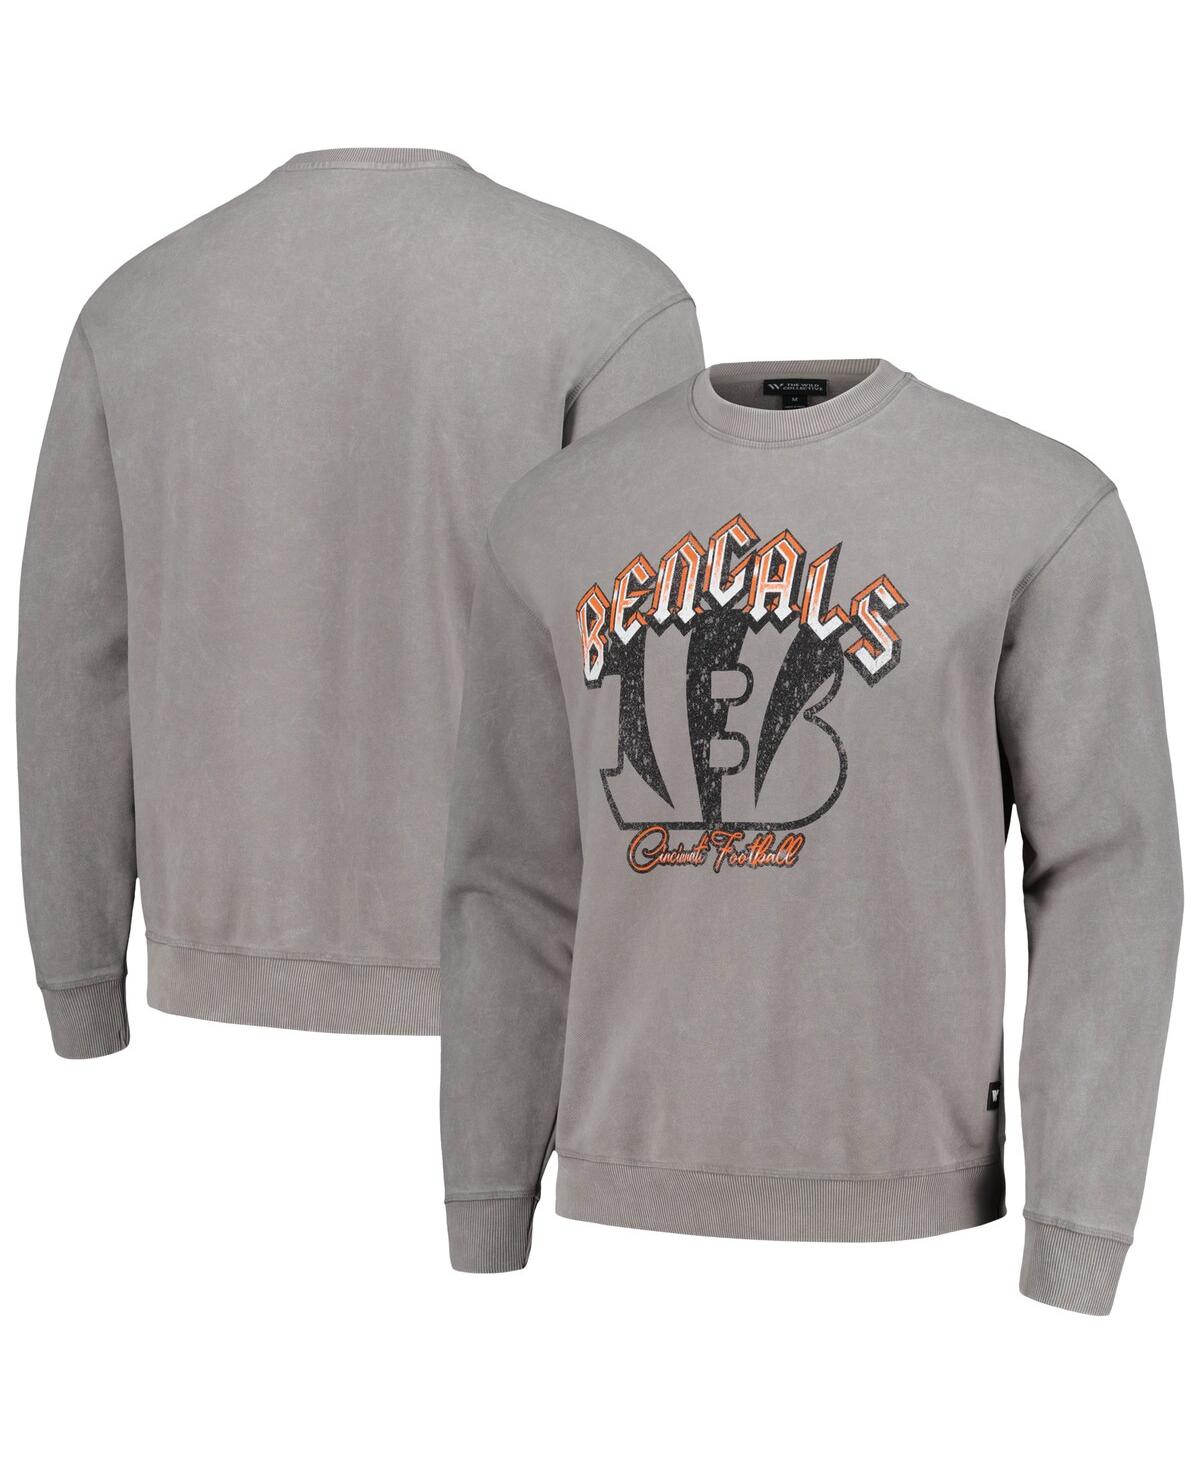 Shop The Wild Collective Men's And Women's  Gray Cincinnati Bengals Distressed Pullover Sweatshirt